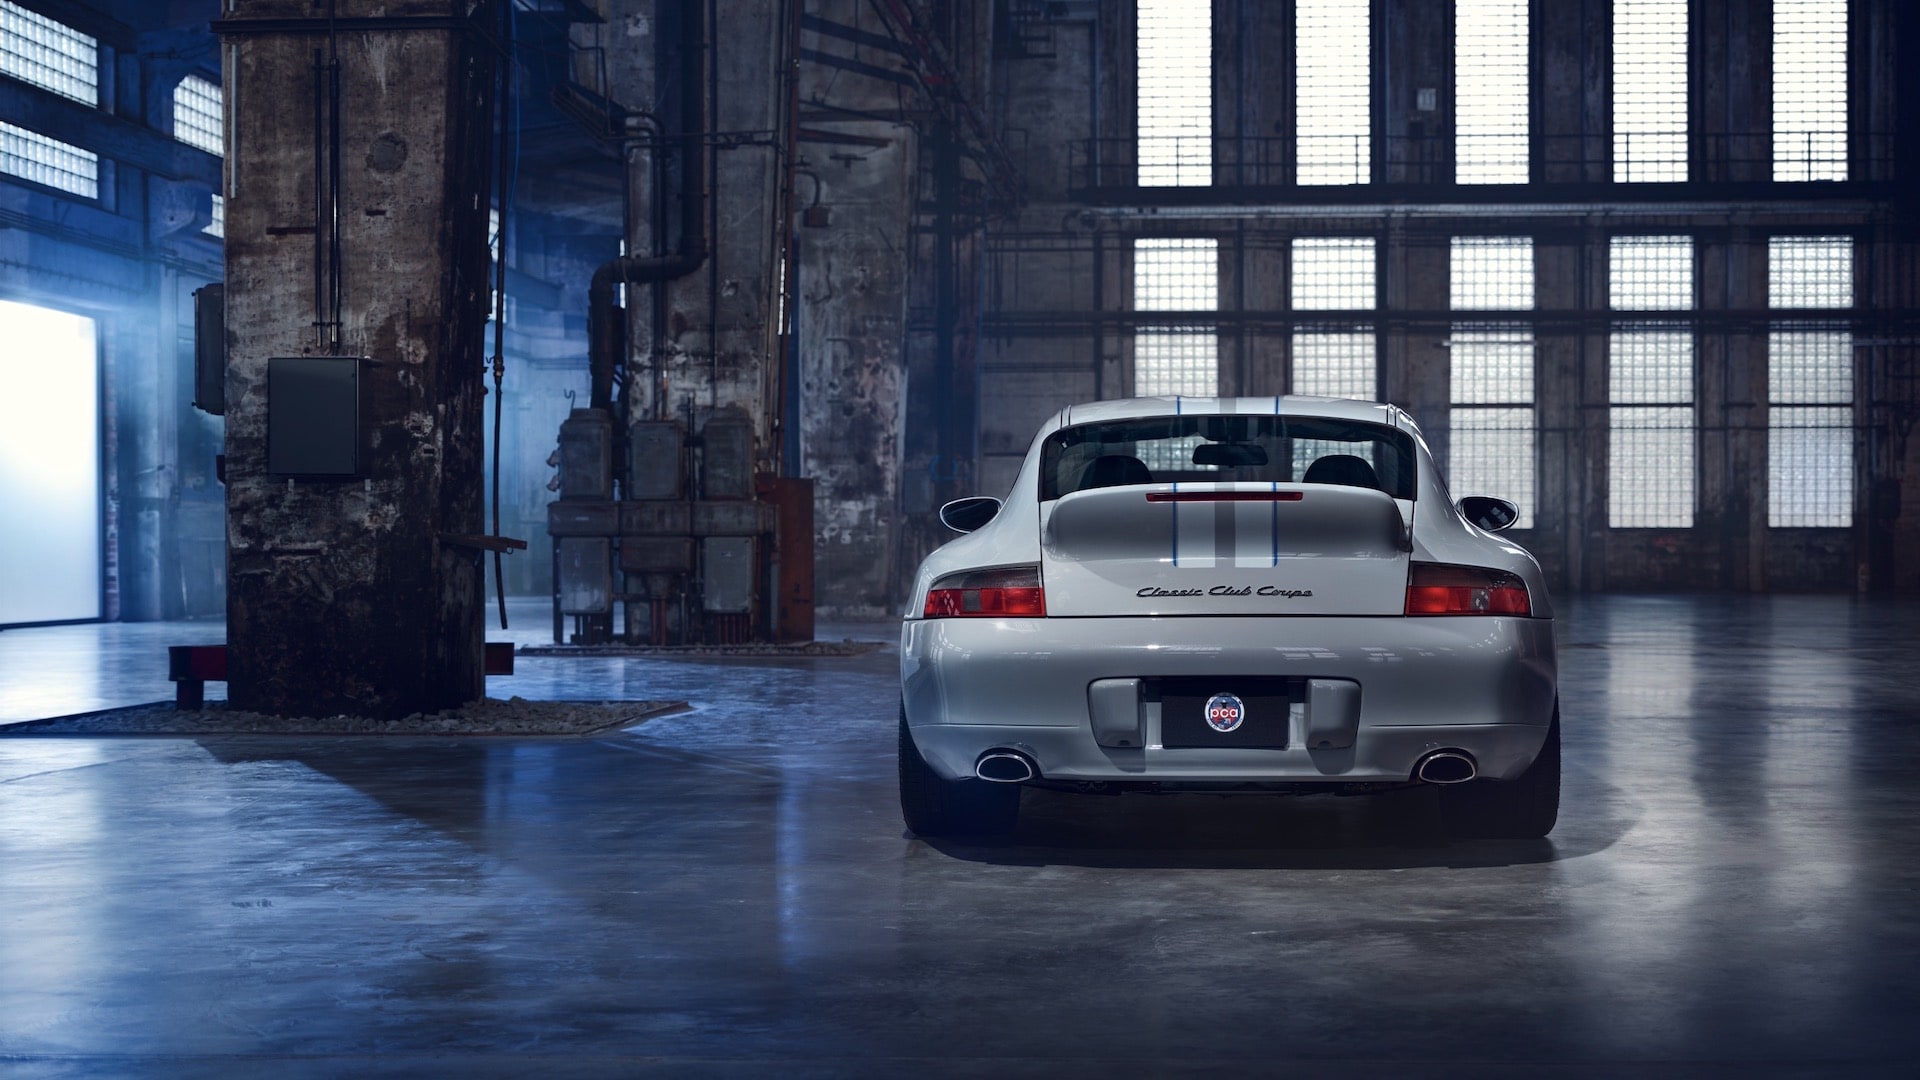 Porsche 911 Classic Club Coupe Auction